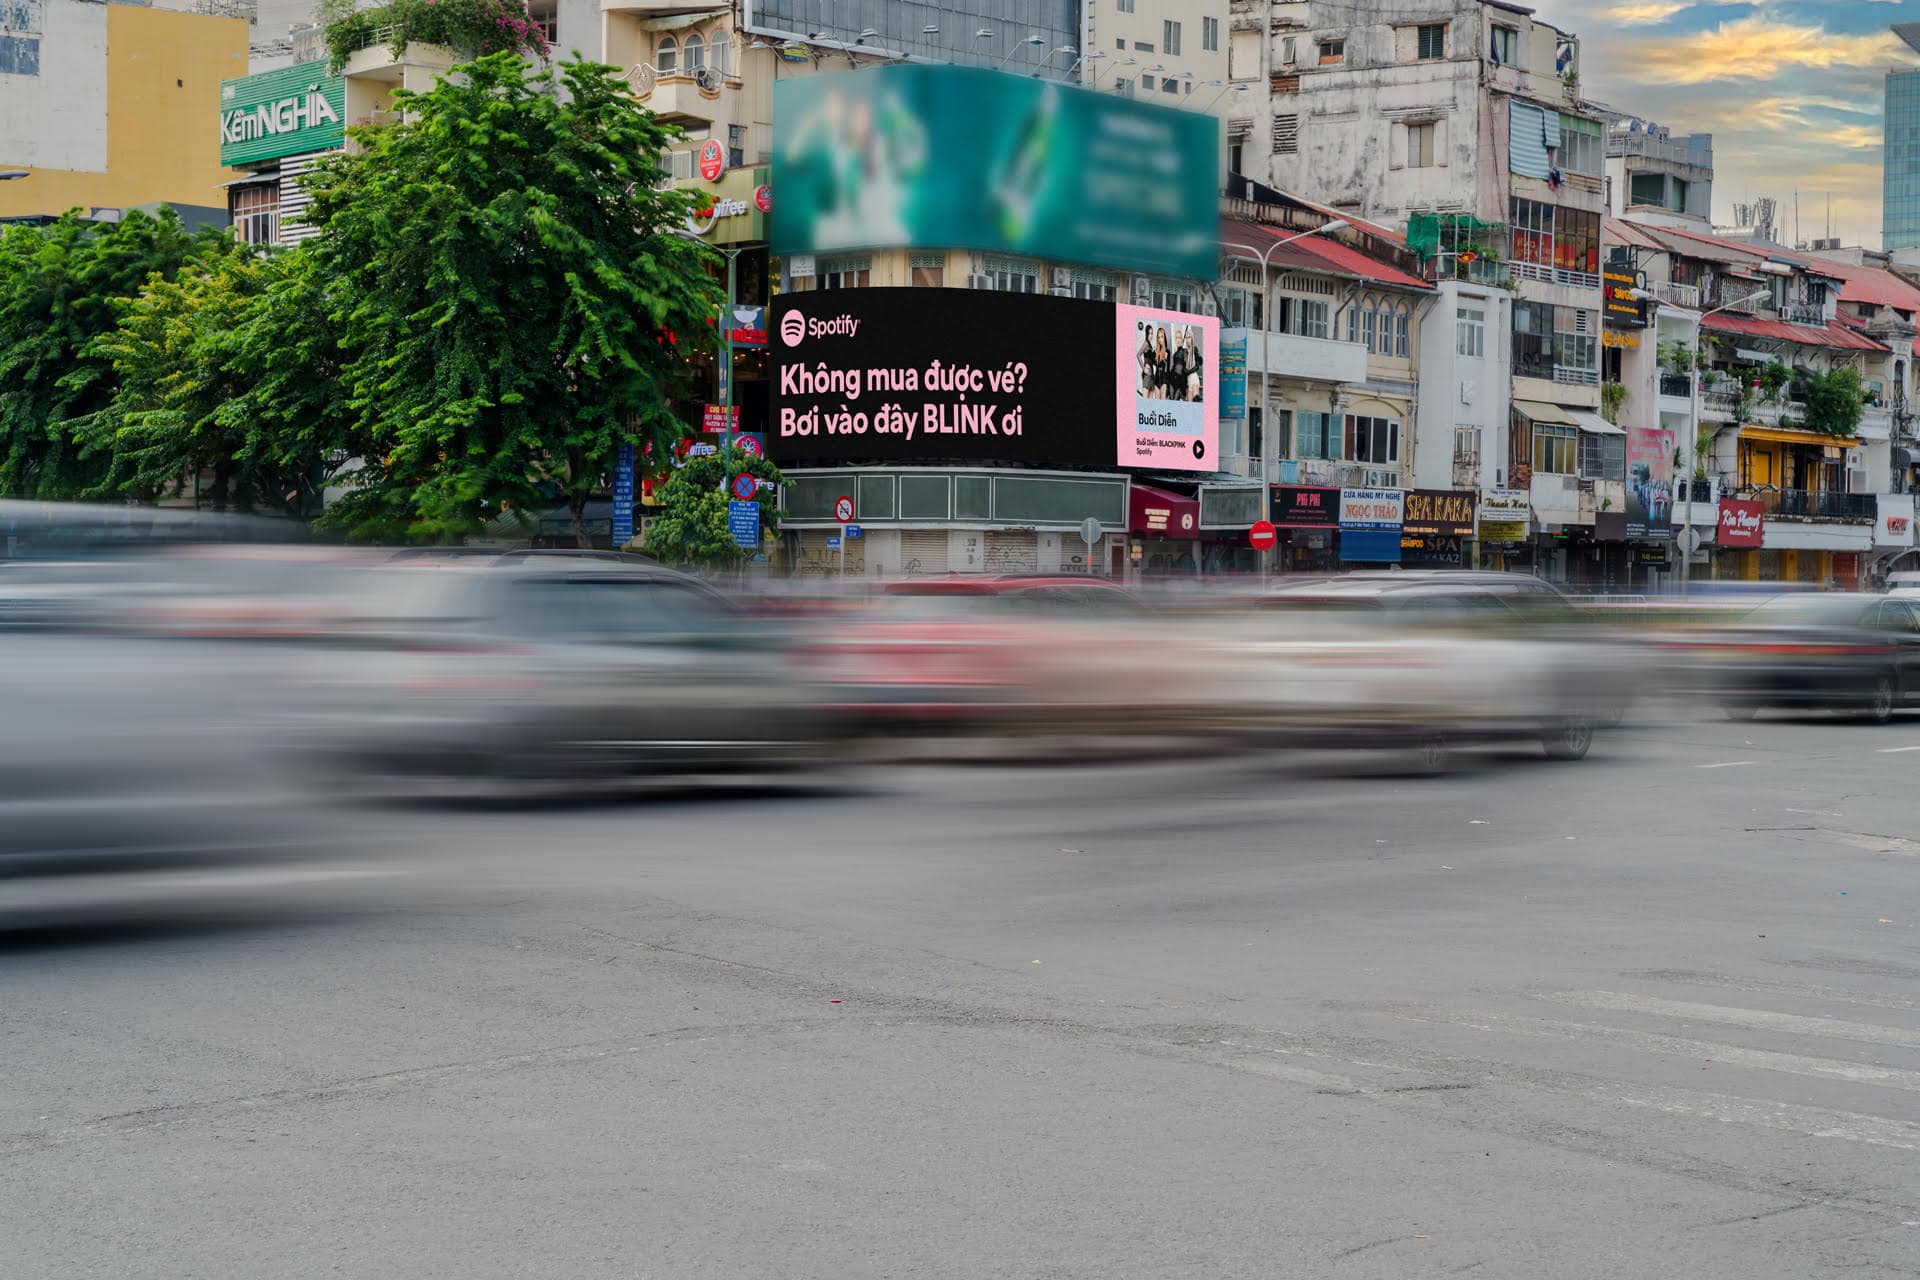 Hình ảnh chụp tại TP Hồ Chí Minh được fanpage Blackpink chia sẻ. Ảnh: Blackpink